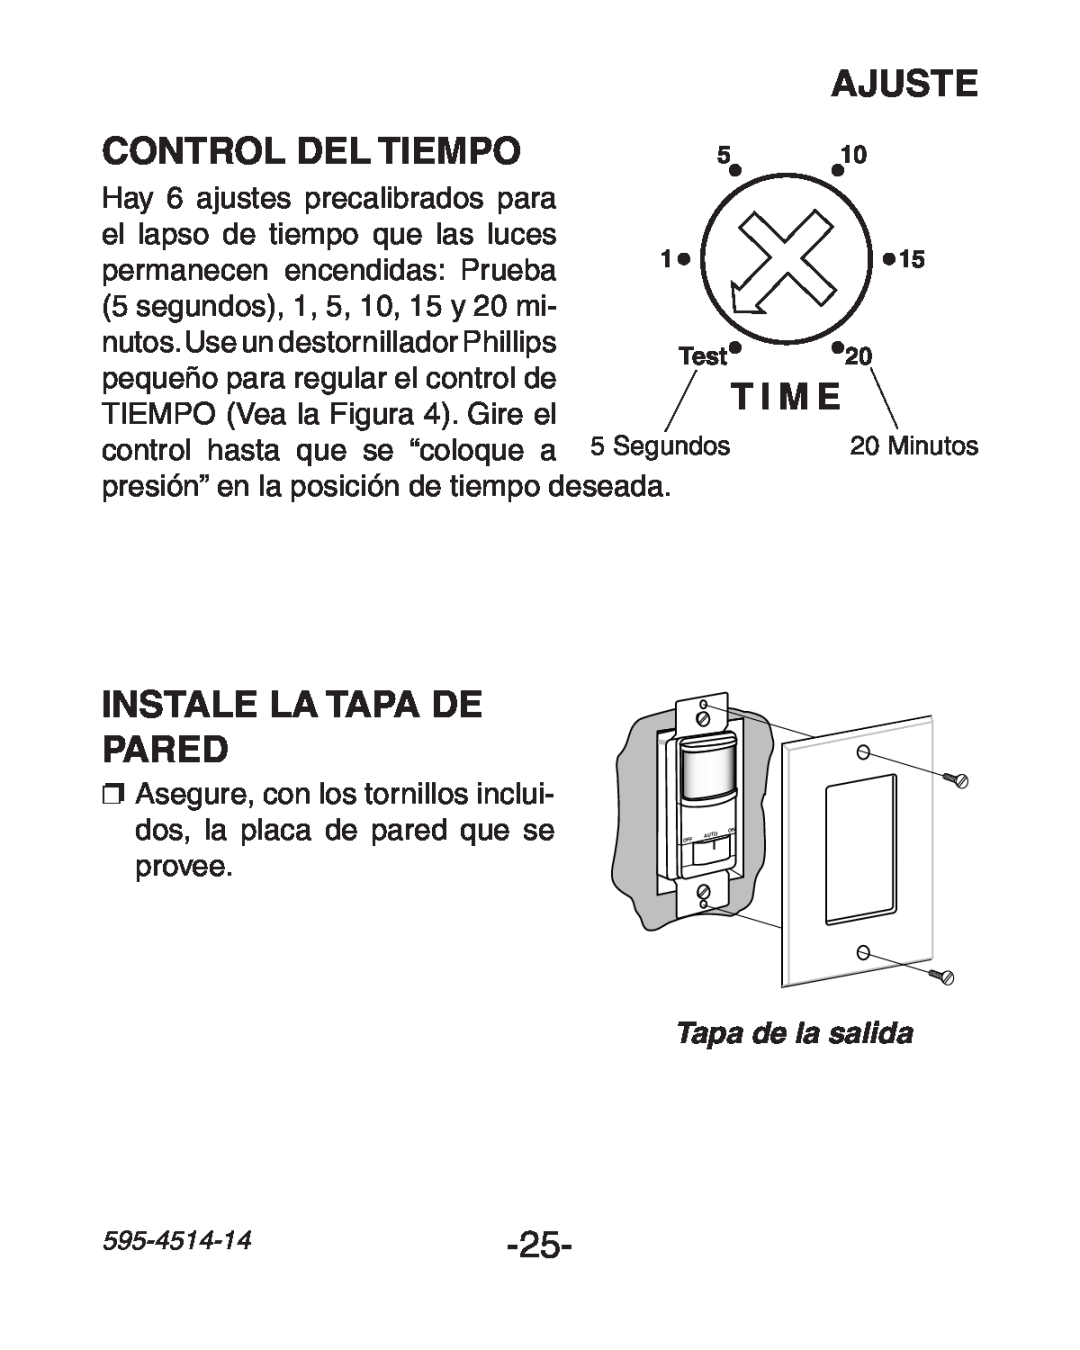 Heath Zenith SL-6107 manual Ajuste, Control del Tiempo, Instale la Tapa de Pared, T I M E, Tapa de la salida 